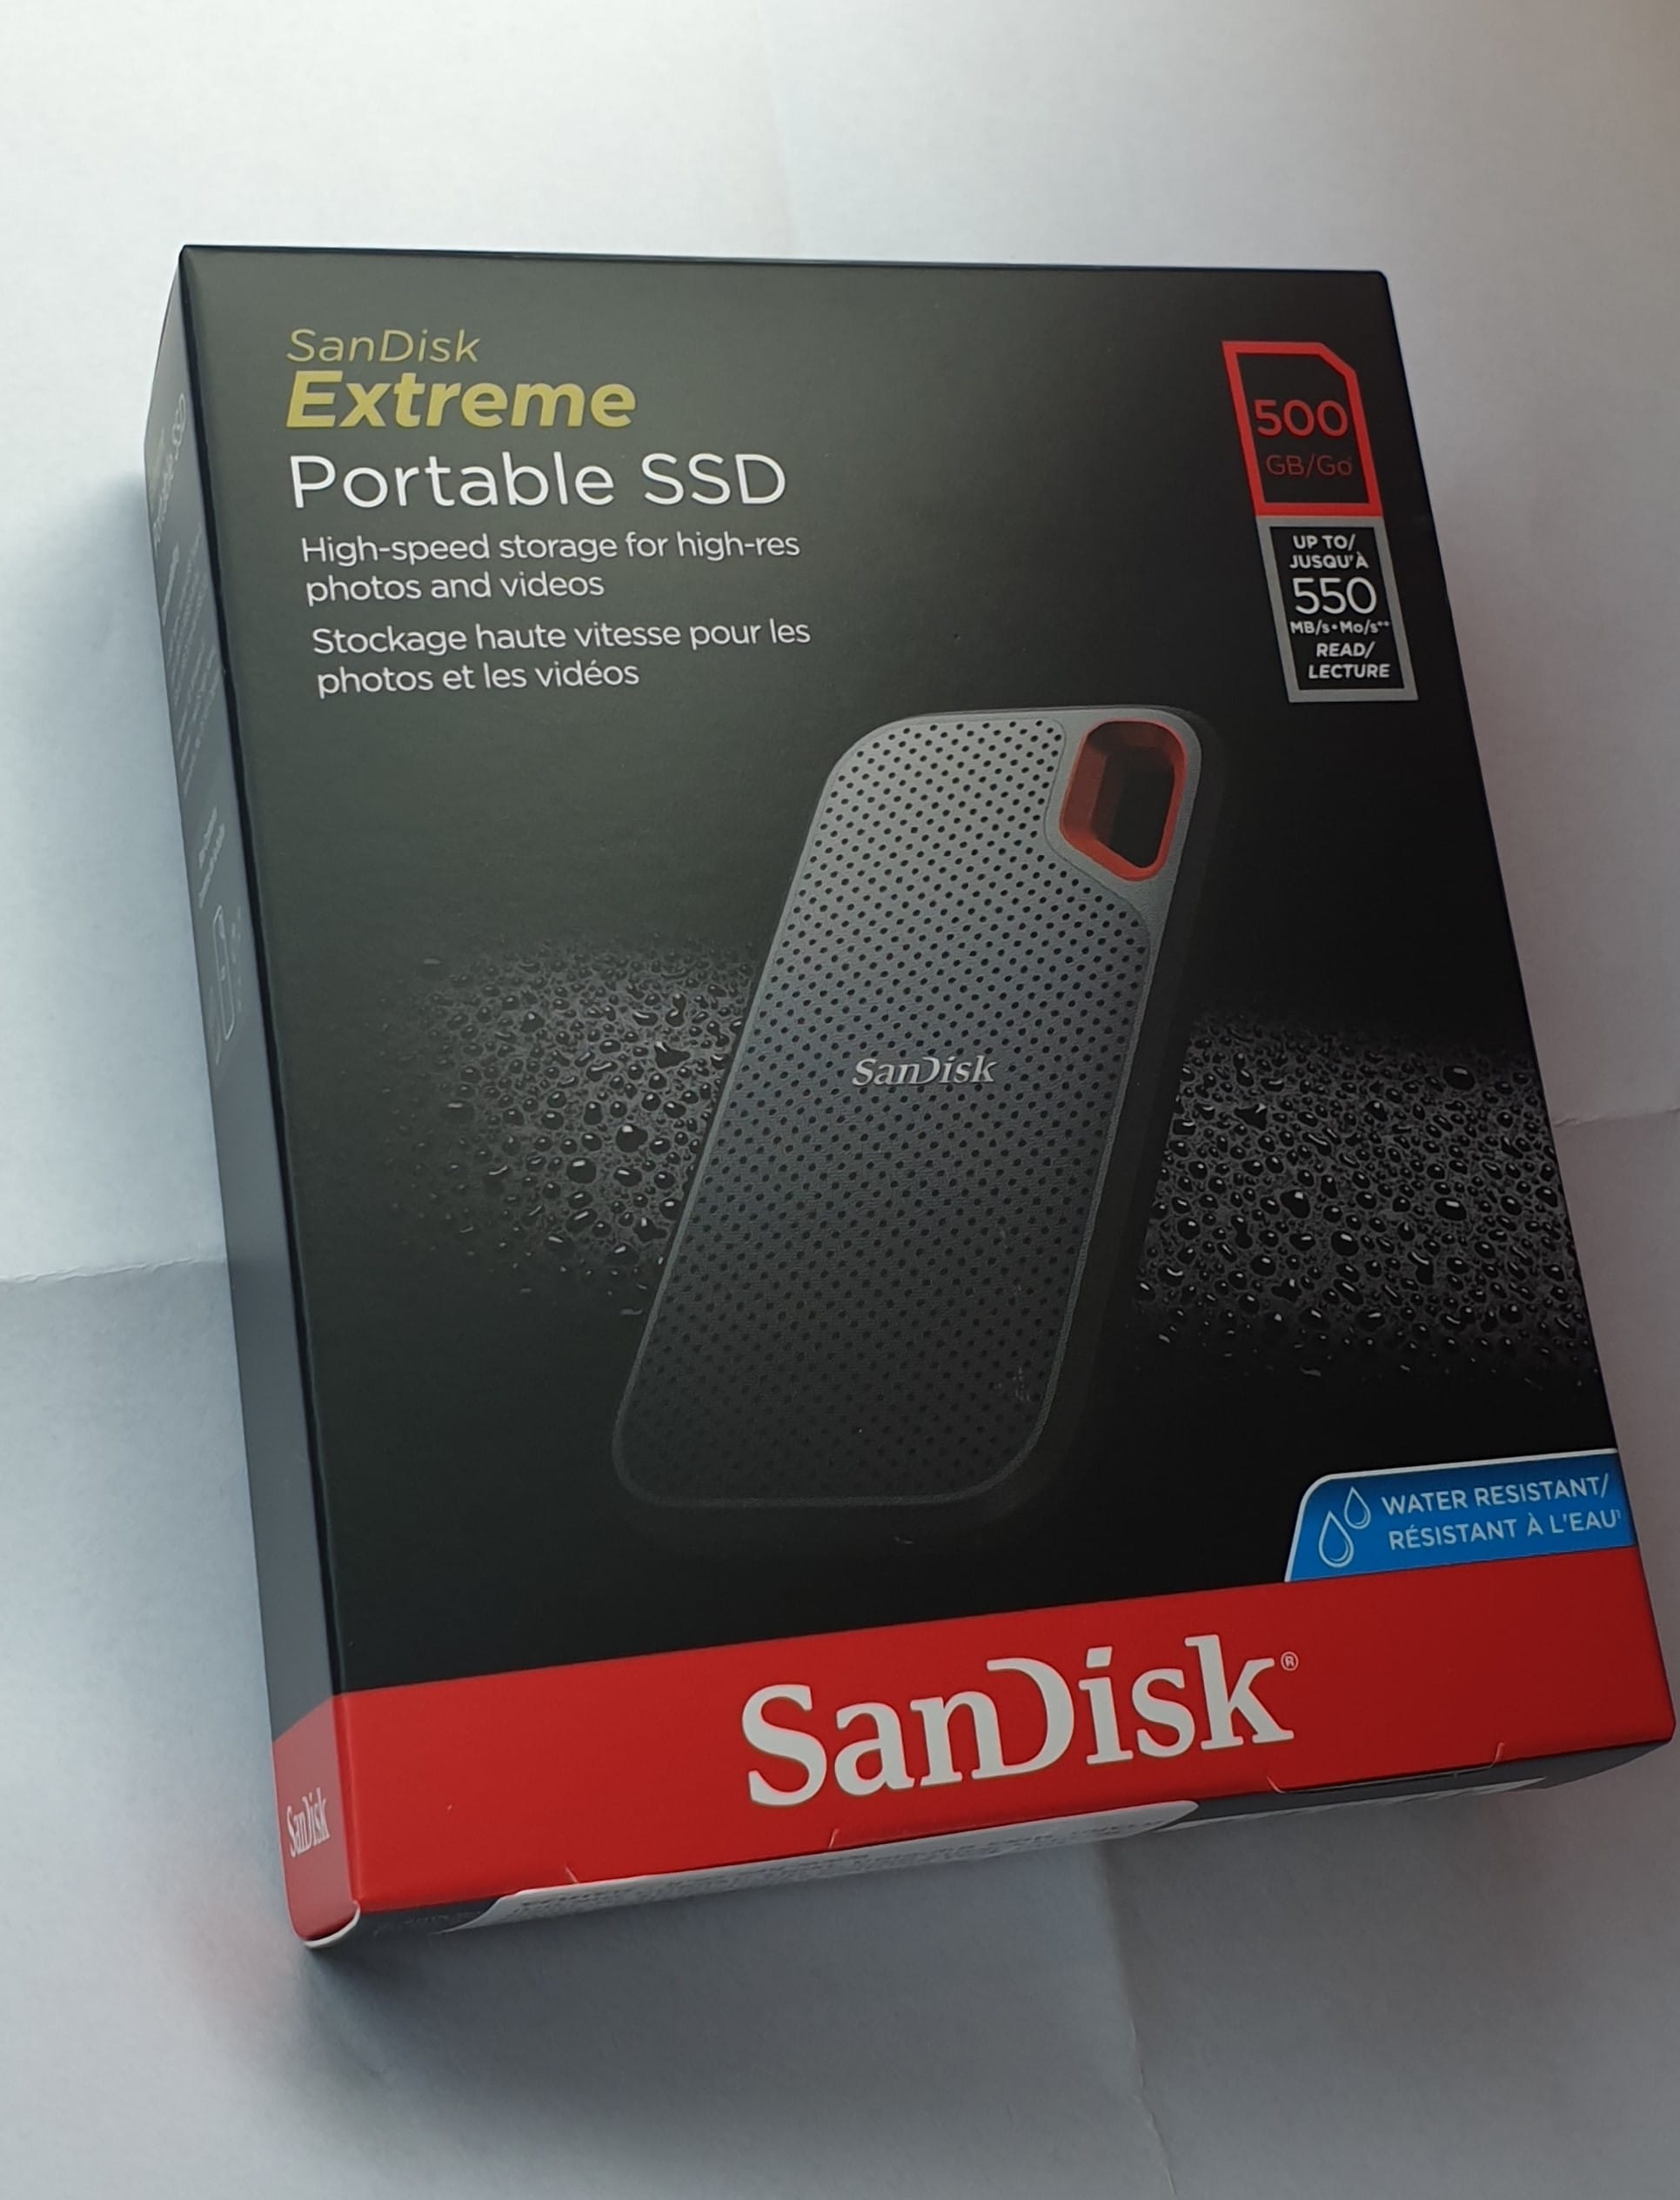 SanDisk SSD 500GB Ankerハブ あなたのスタイル、私たちの技術